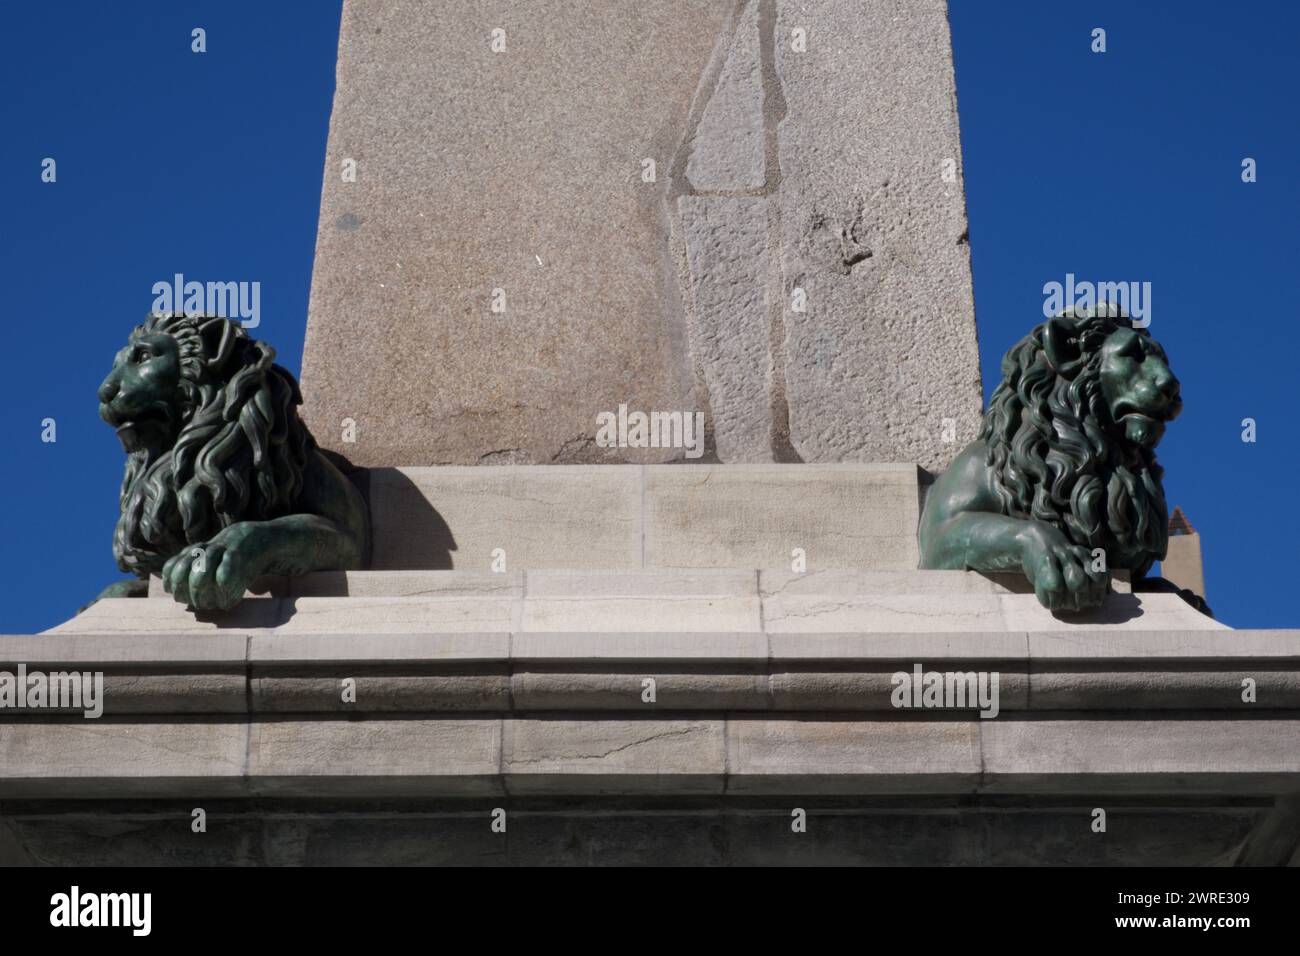 Sculptures de lion sur l'obélisque, place de la République Arles France Banque D'Images